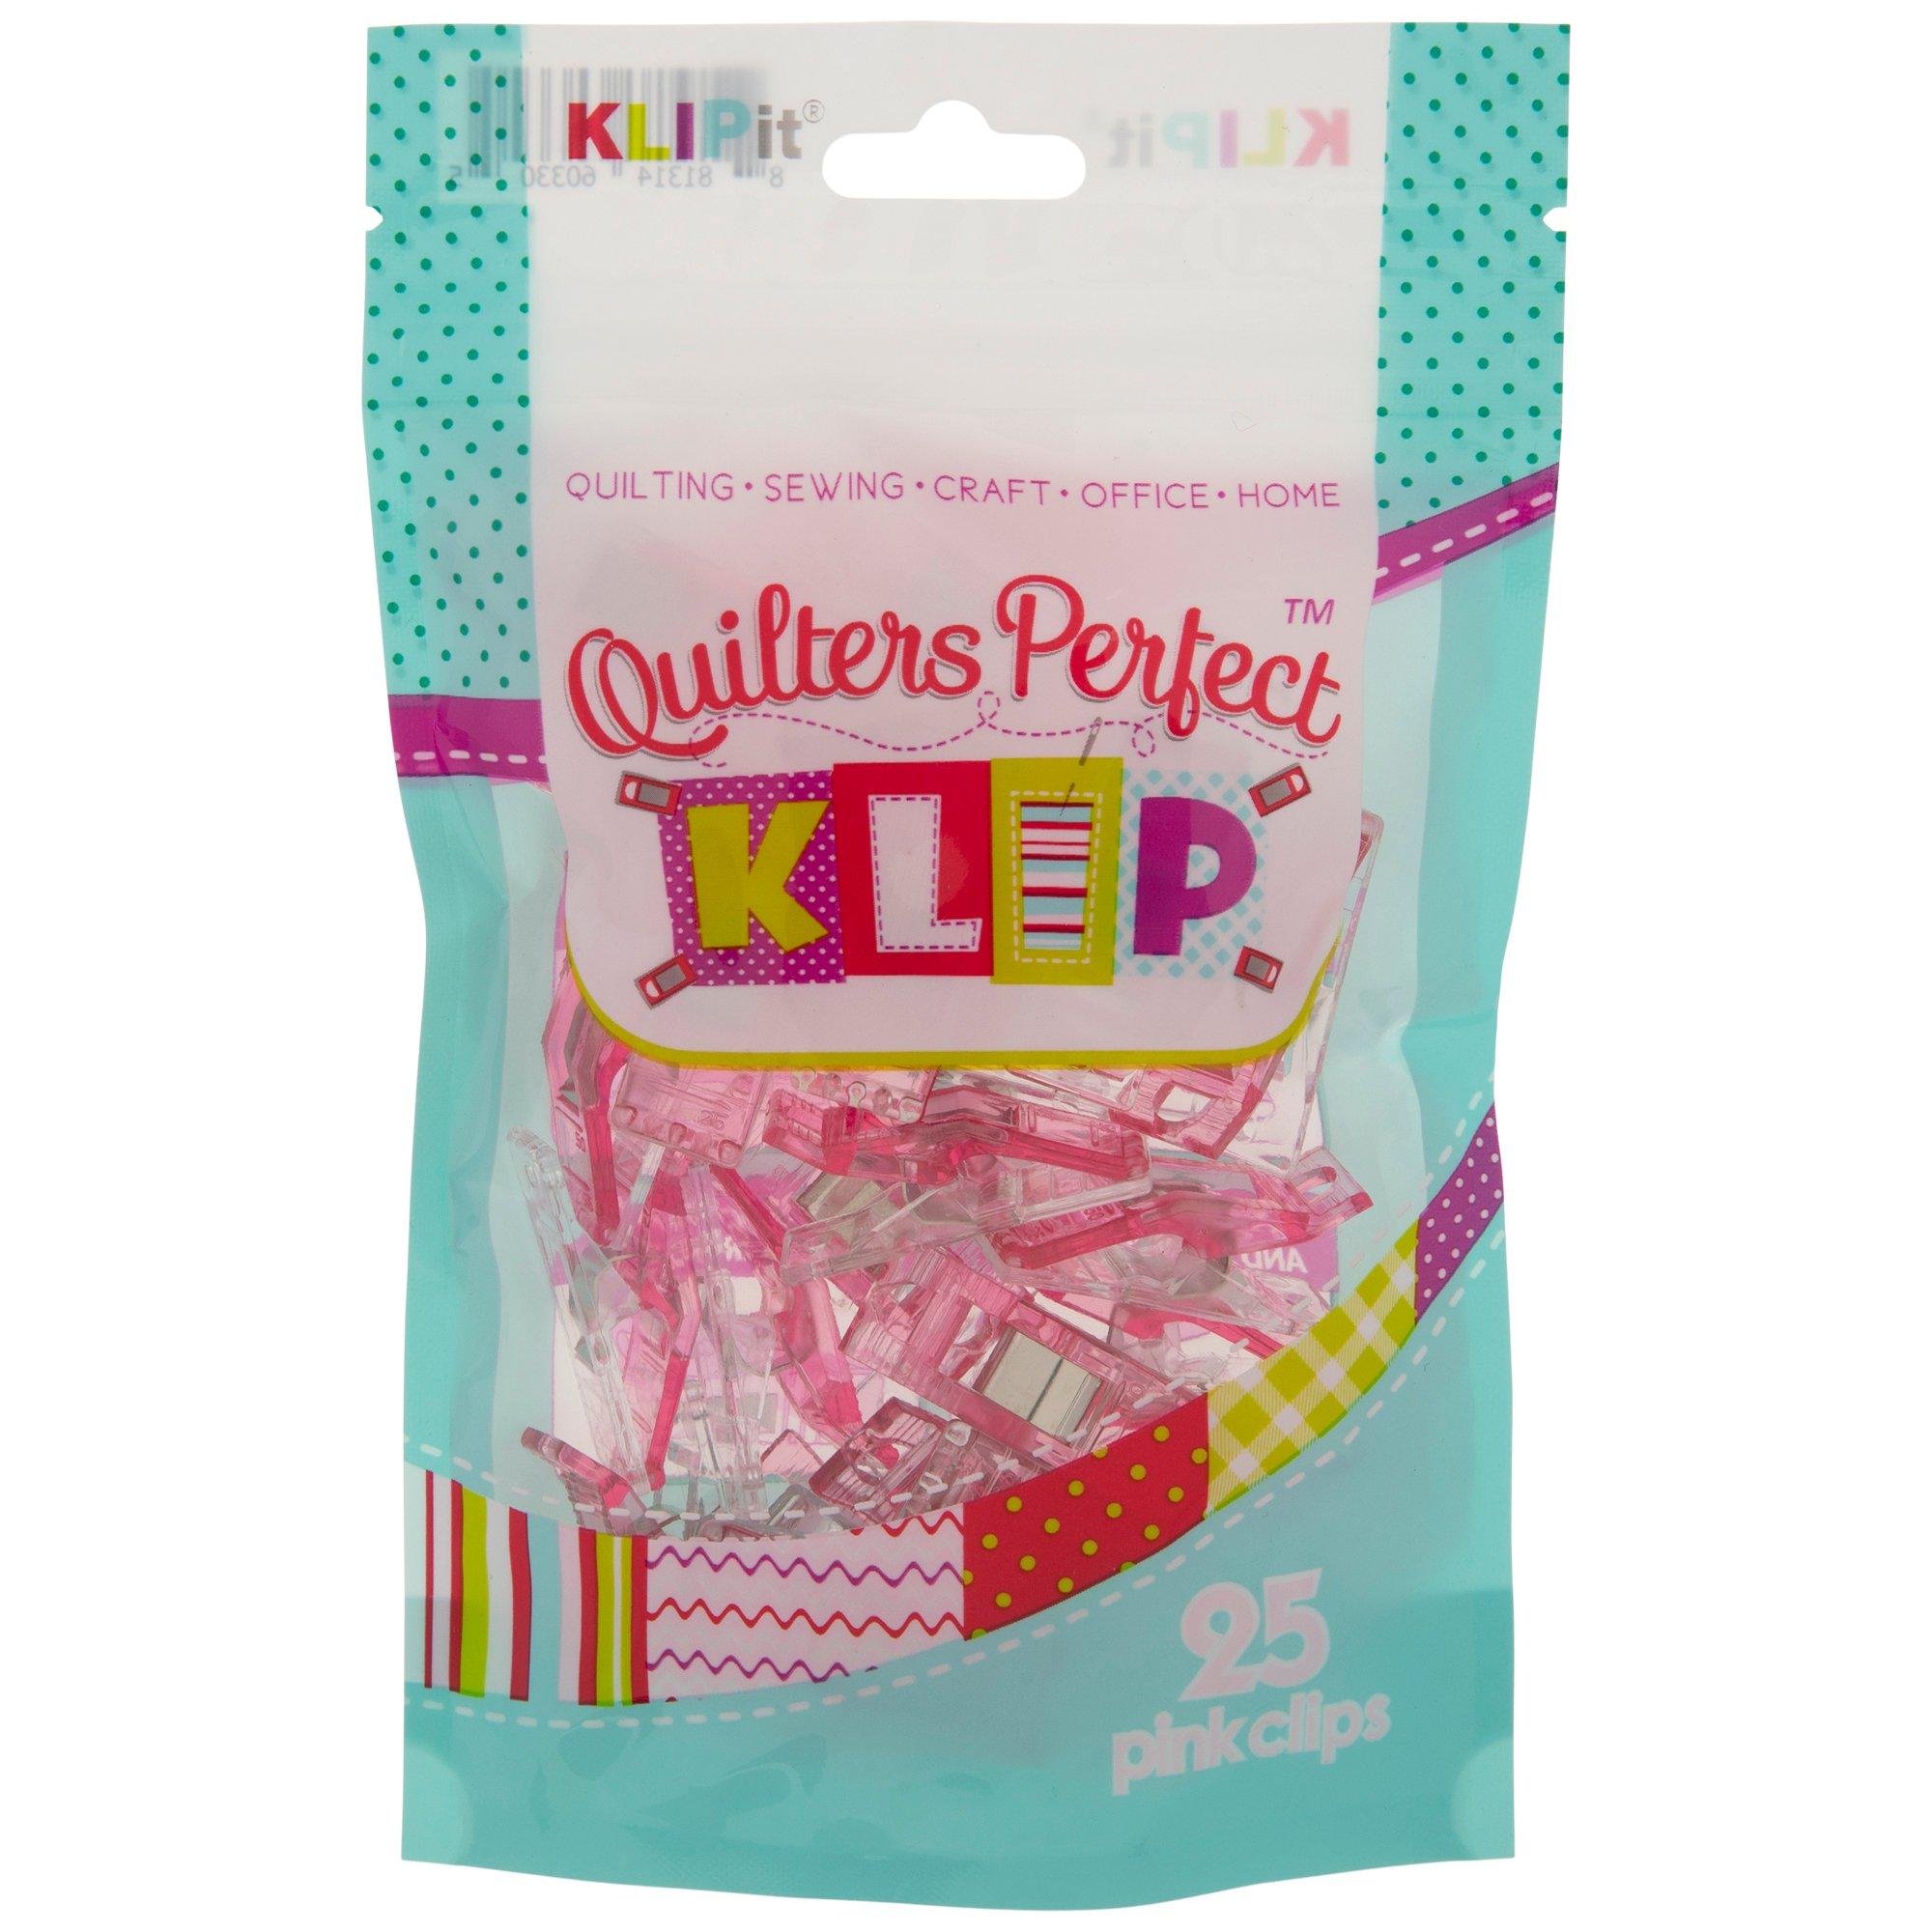 KLIPit Quilters Perfect Klip Klear Top 50pc Citrus